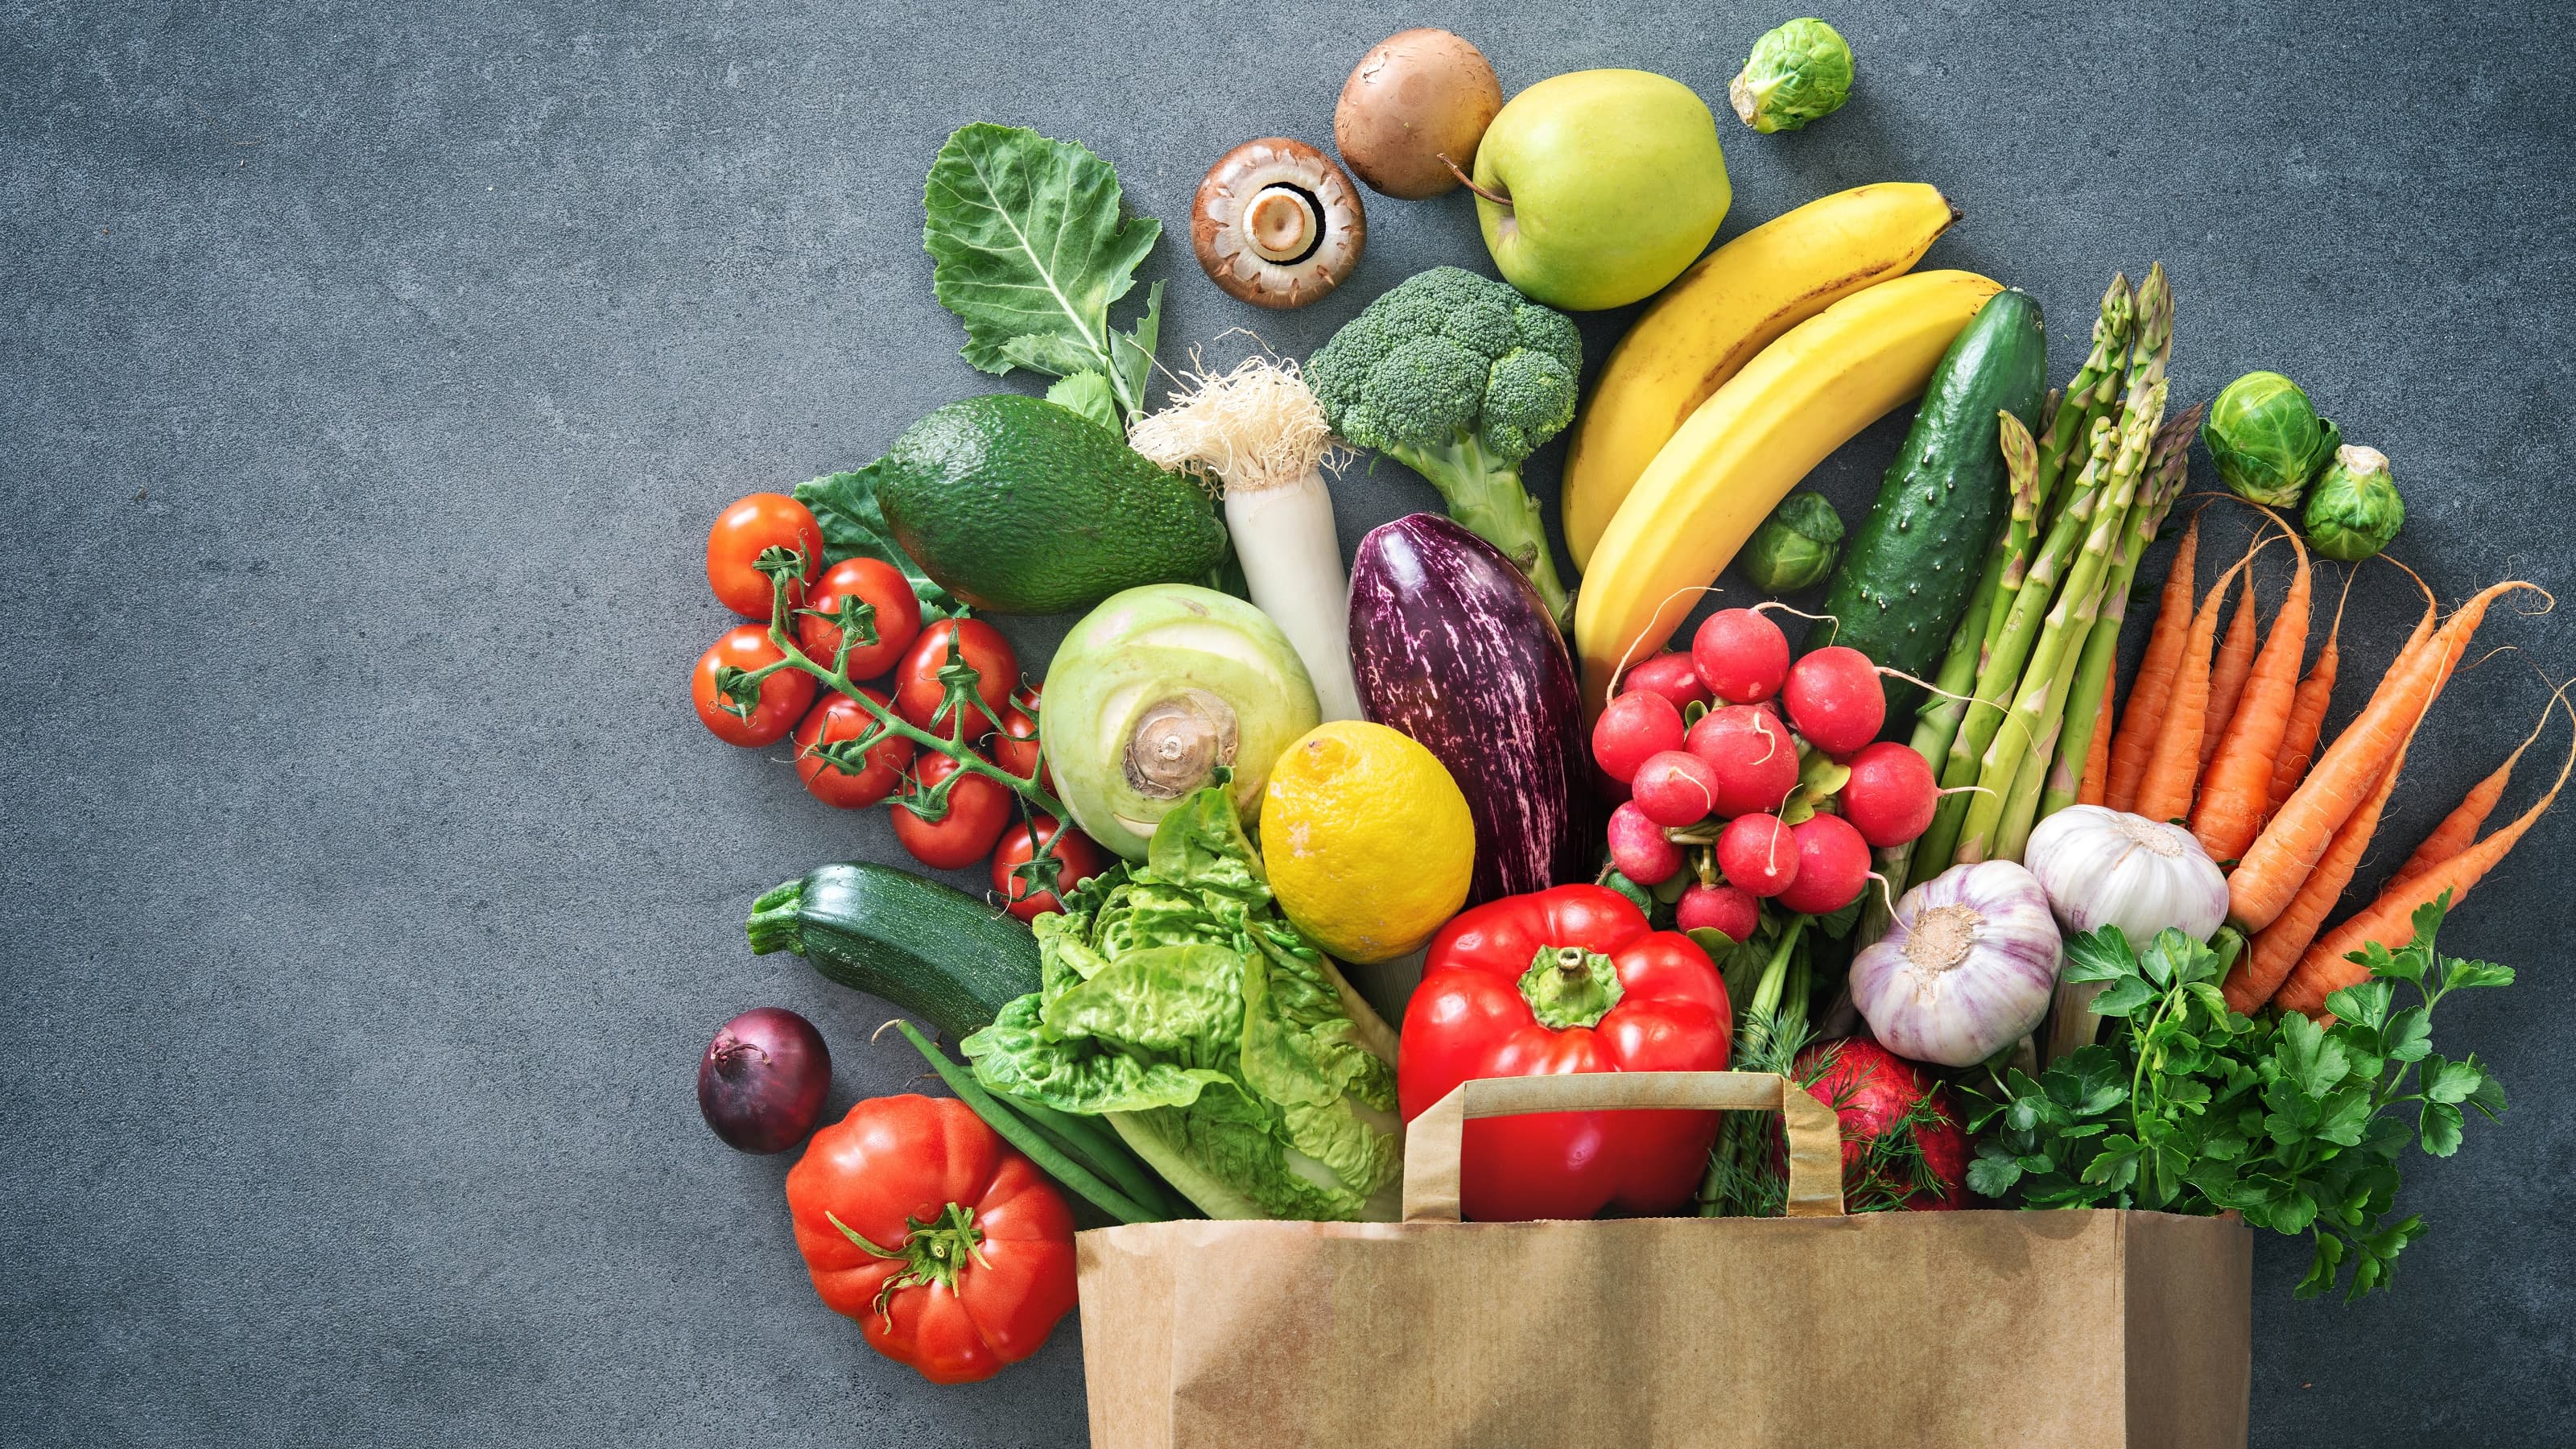 Vegetable products. Овощи и фрукты. Продукты овощи. Свежие овощи и фрукты. Arerns b jdjob.